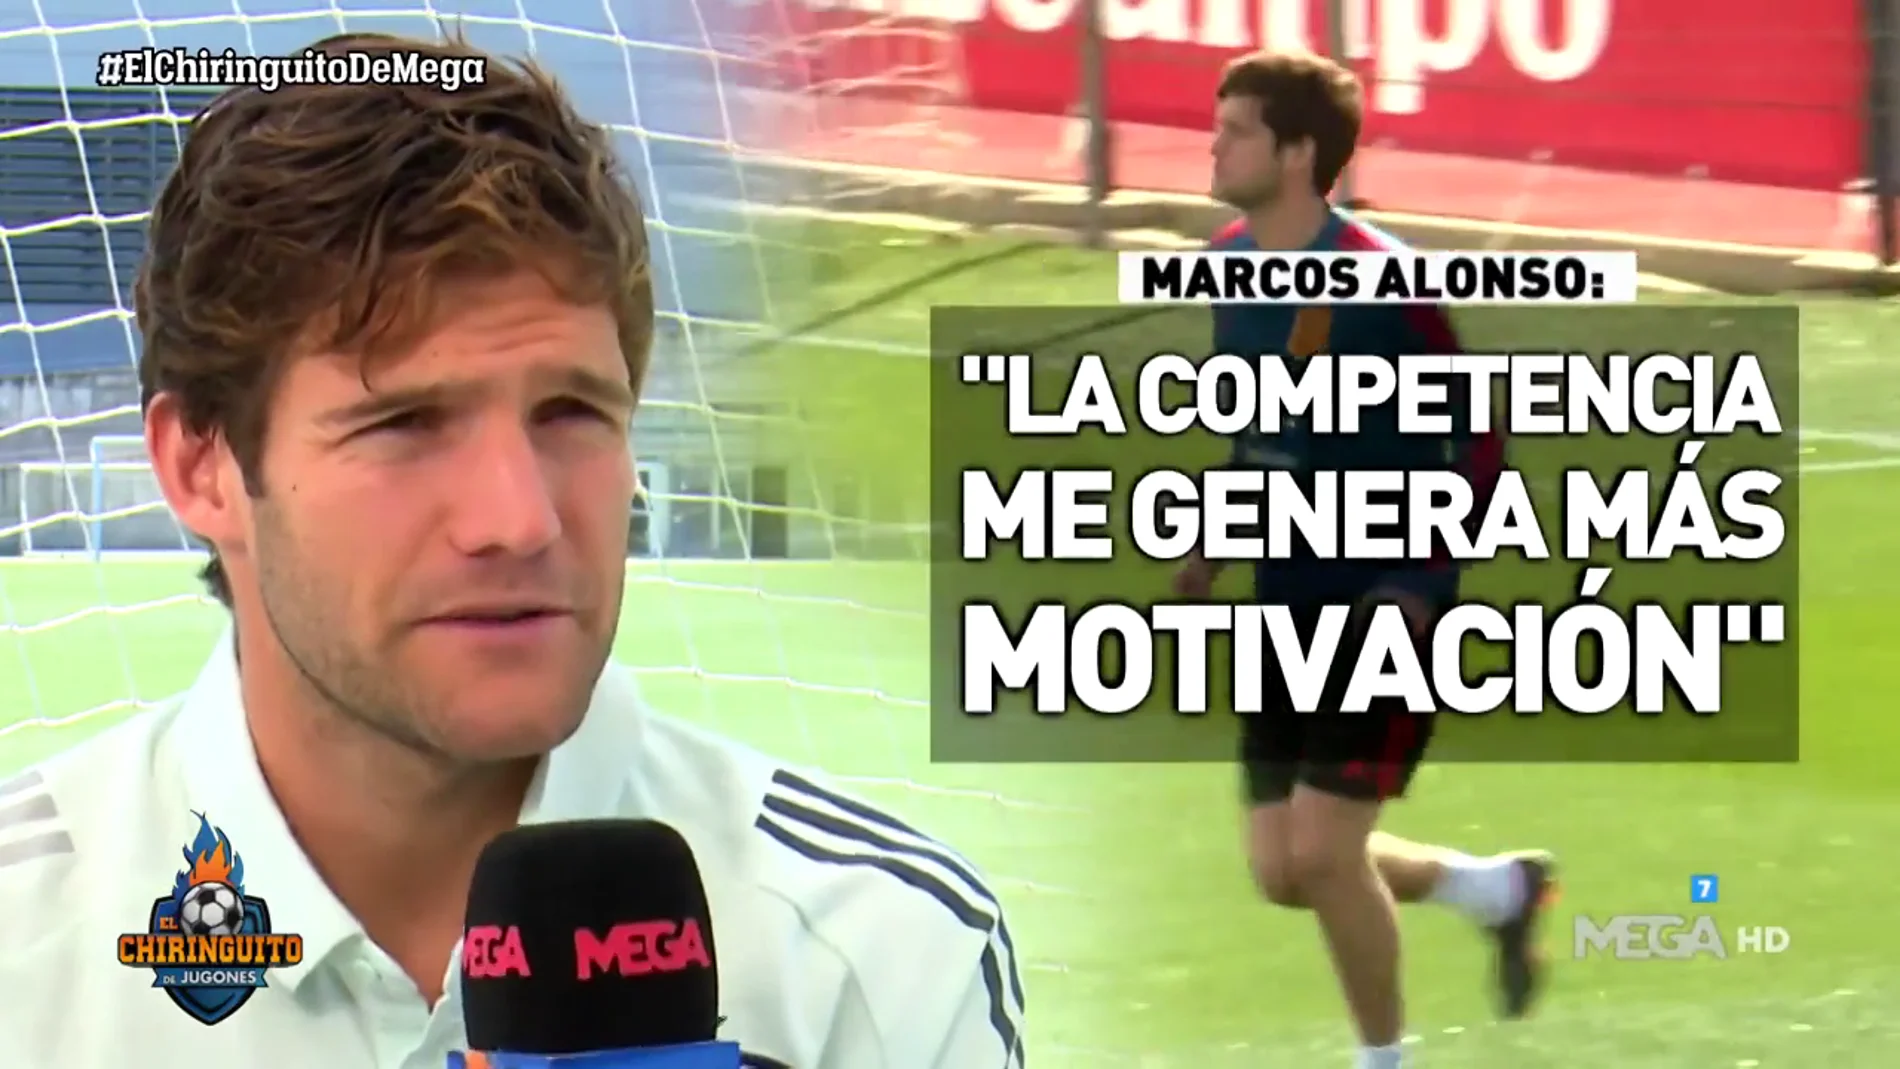 Marcos Alonso: "Hay que darle mérito al Madrid"